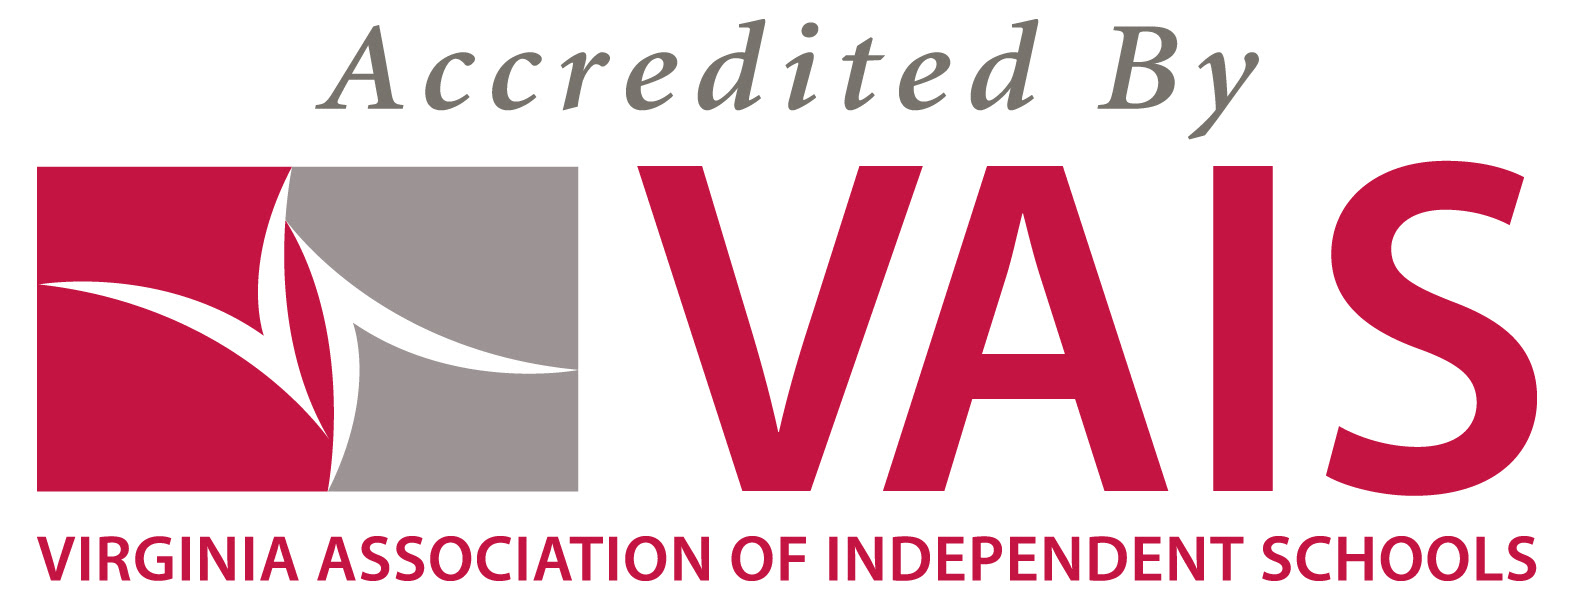 VAIS logo